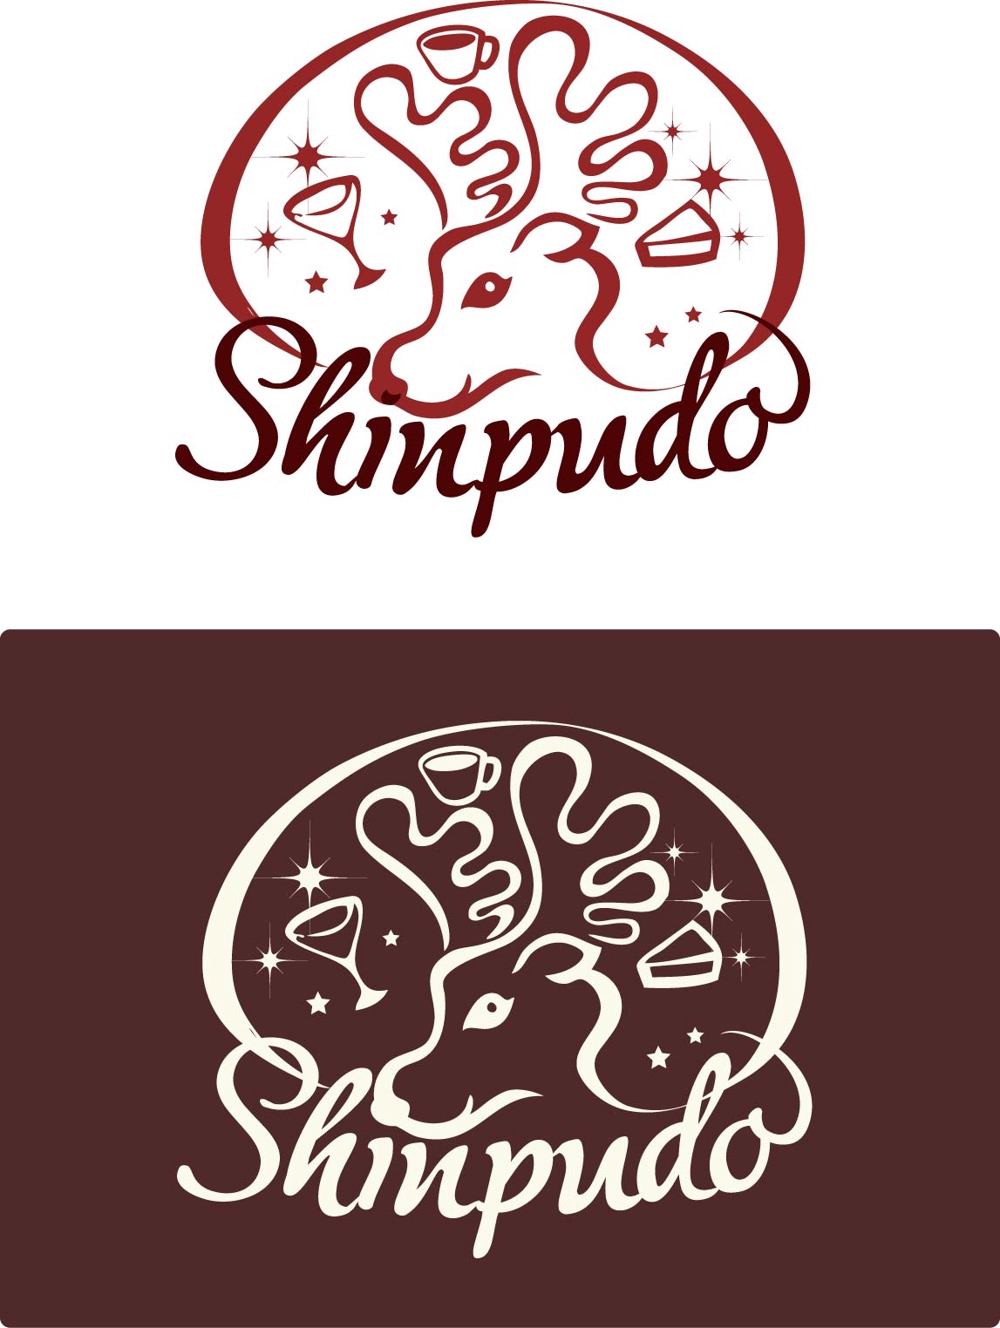 酒、コーヒー、スイーツ販売店のキャラクターロゴ制作